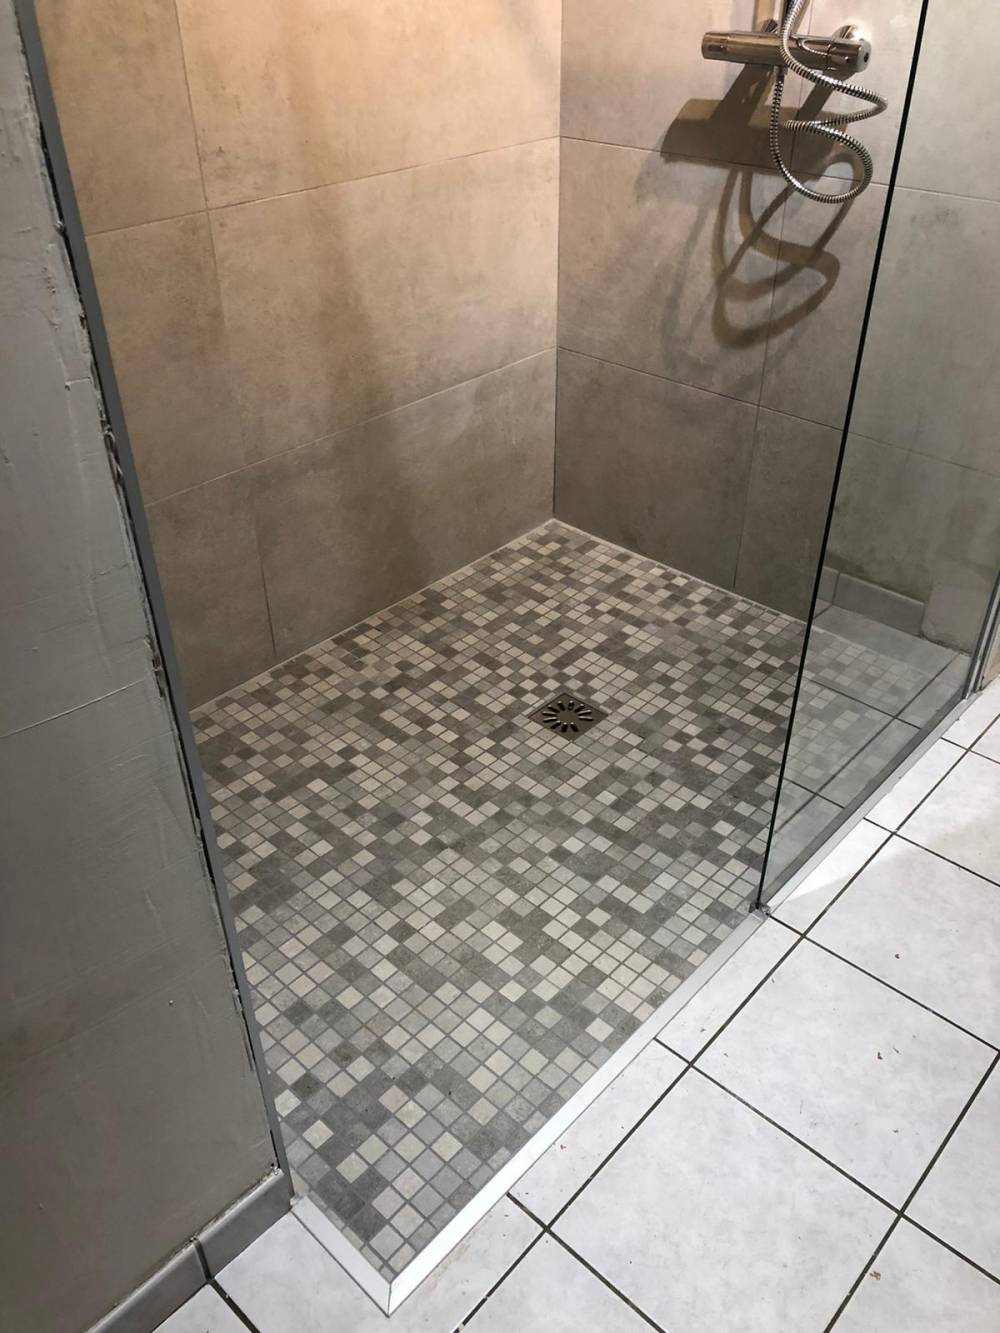 Salle de bains clé en main - rénovation salle de bain - remplacement baignoire par douche - Douche sécurisée Handibat Qualibat PMR - douche pour personnes à mobilité réduite - 73 - Savoie - Chambéry - Aix-les-Bains - 74 - Haute-Savoie - Annecy - climatisation réversible - clim - climaticien